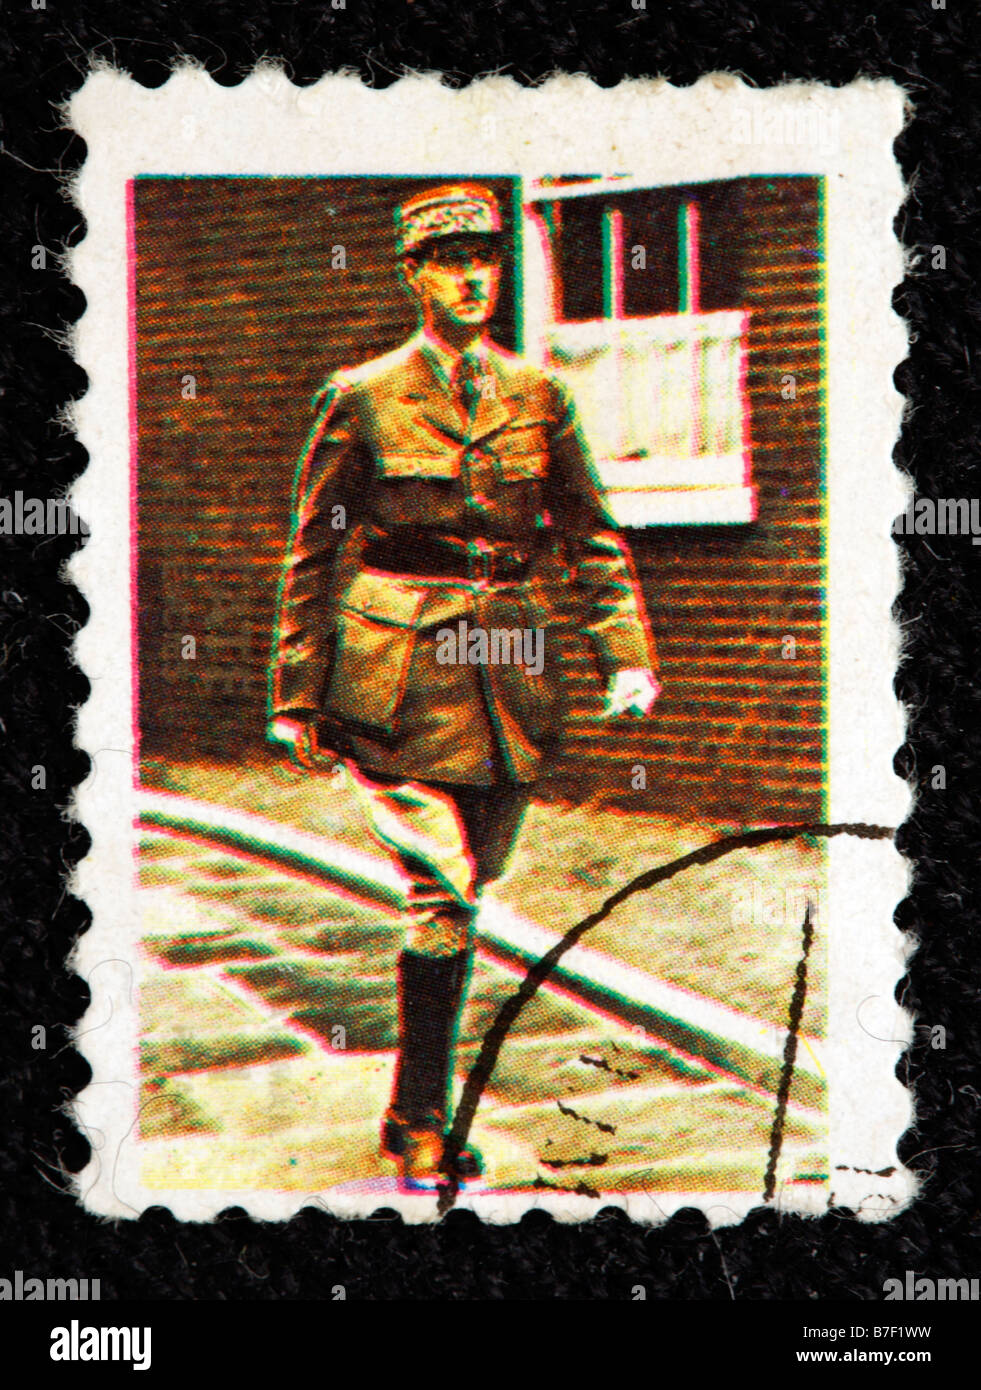 Charles de Gaulle (1890-1970), Général, Président de la France, timbre-poste, Ajman, Émirats arabes unis Banque D'Images